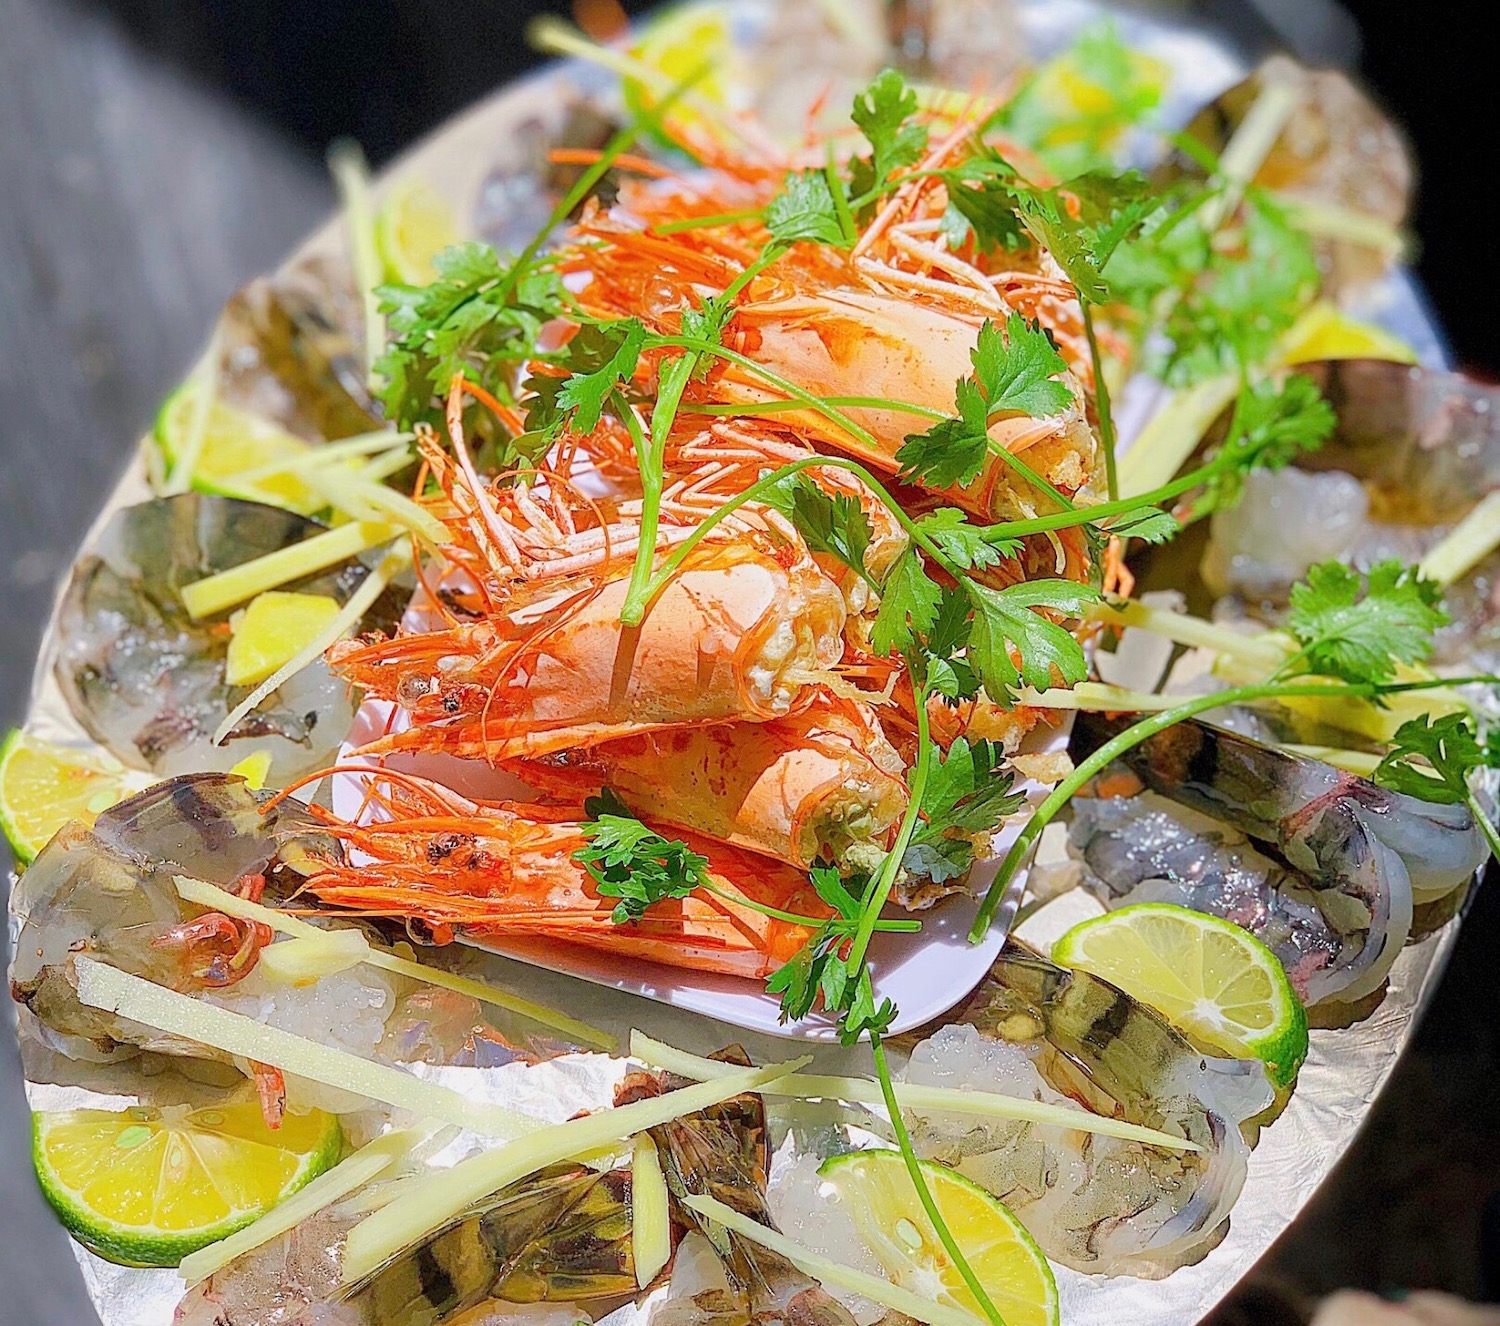 Nhà hàng Quang Anh - Vua cua Ô Loan Phú Yên với các món hải sản thơm ngon,  sẵn sàng hạ gục bất kỳ tín đồ ẩm thực nào